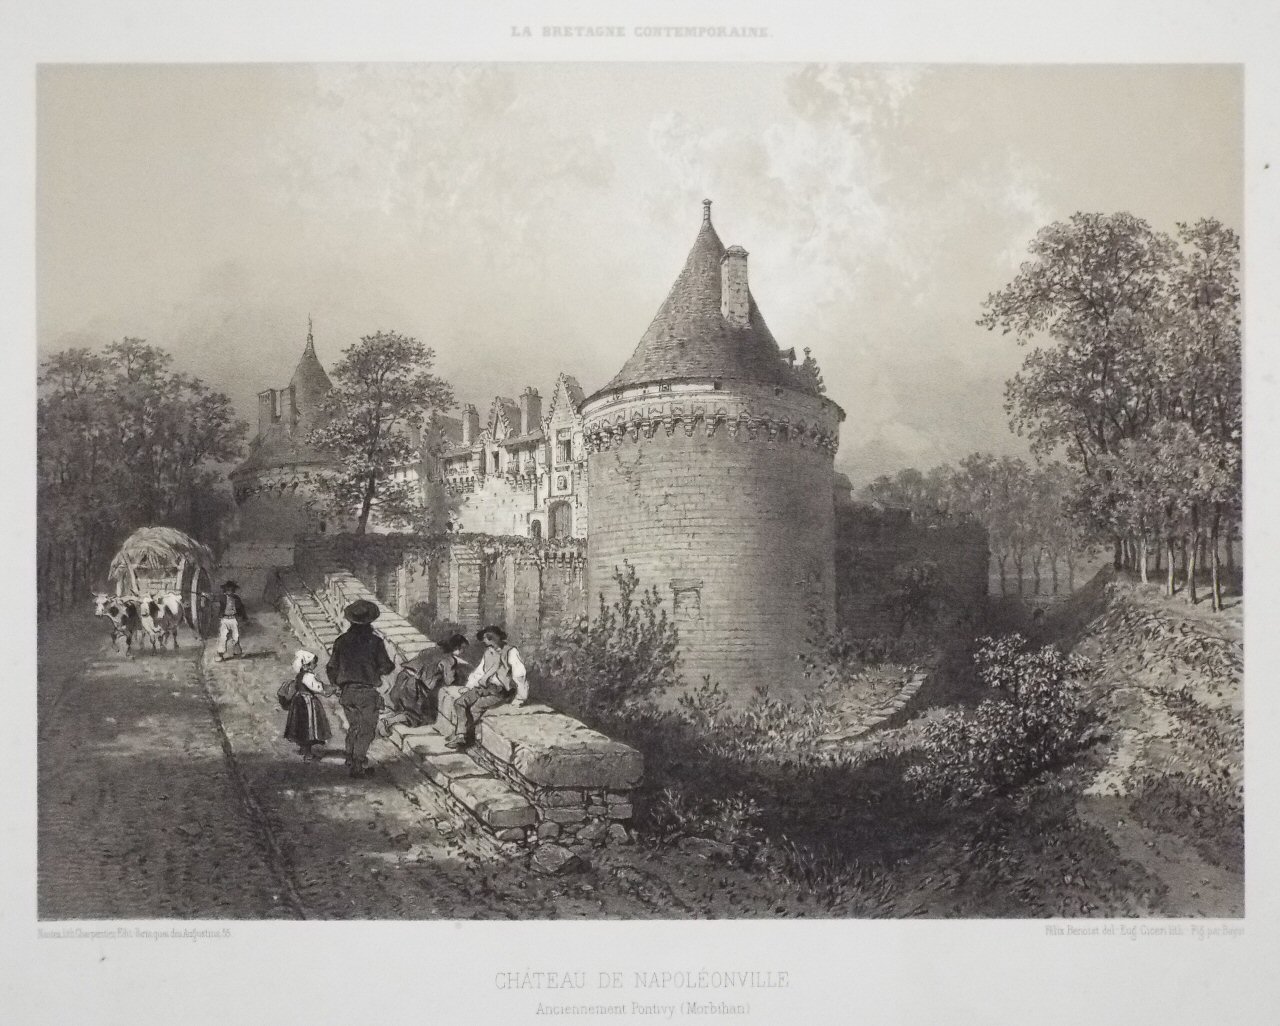 Lithograph - Chateau de Napoleonville. Anciennement Pontivy (Morbihan) - Ciceri